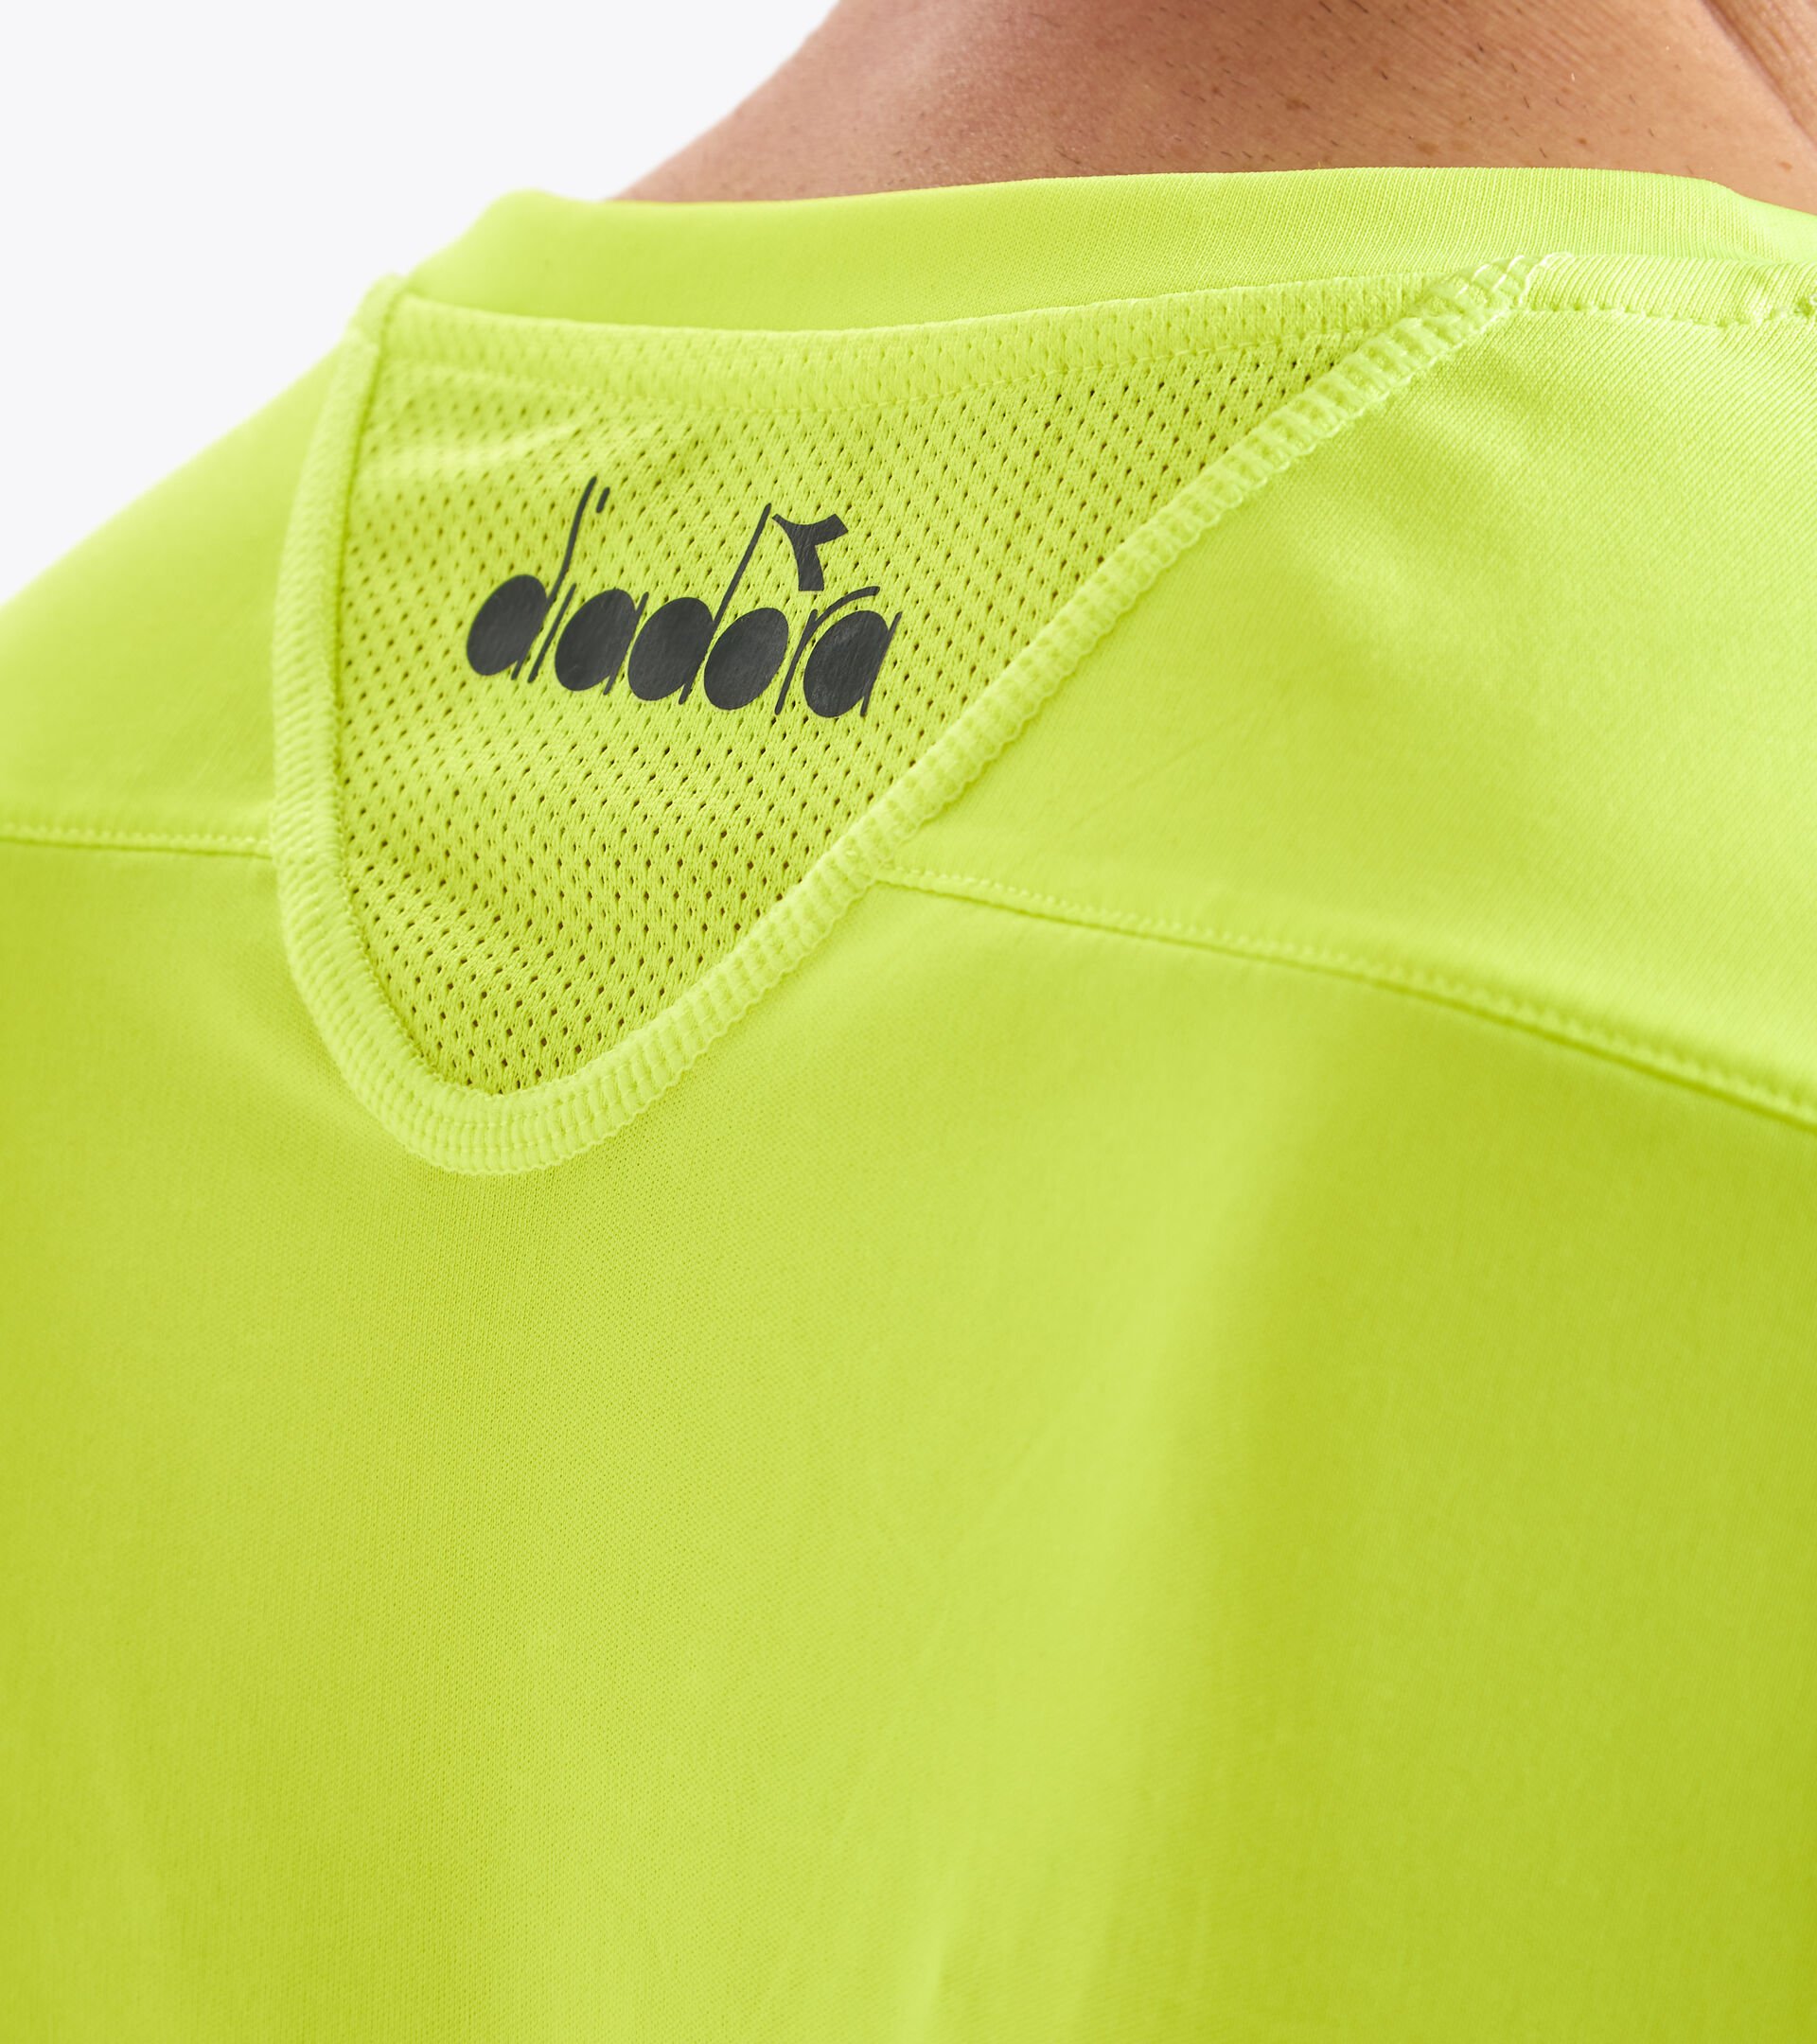 T-shirt de tennis - Homme T-SHIRT TEAM JAUNE FLUO DD - Diadora